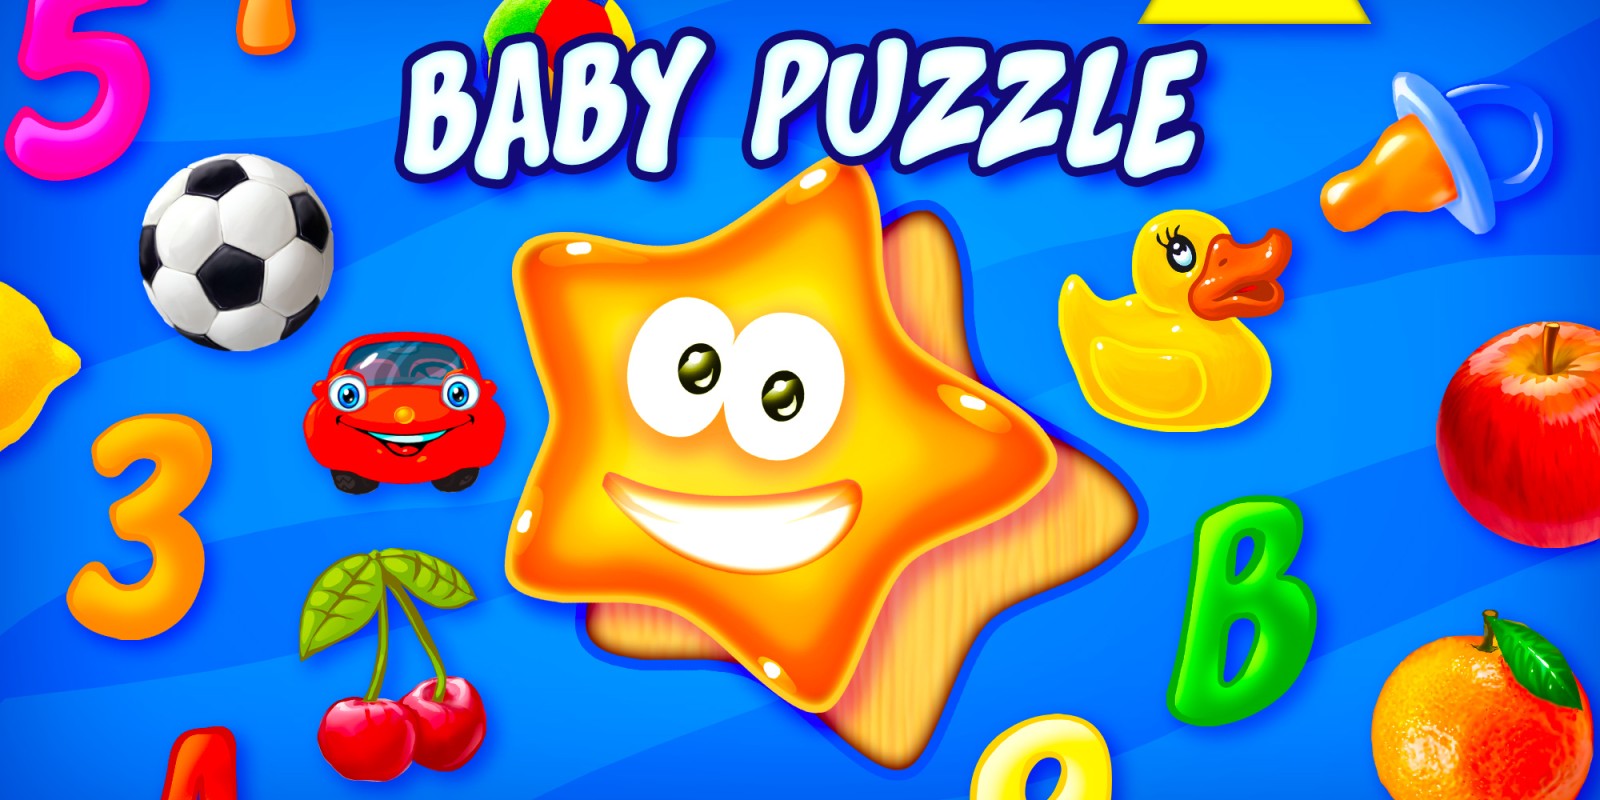 Baby Puzzle - Erste Lernformen für Kleinkinder